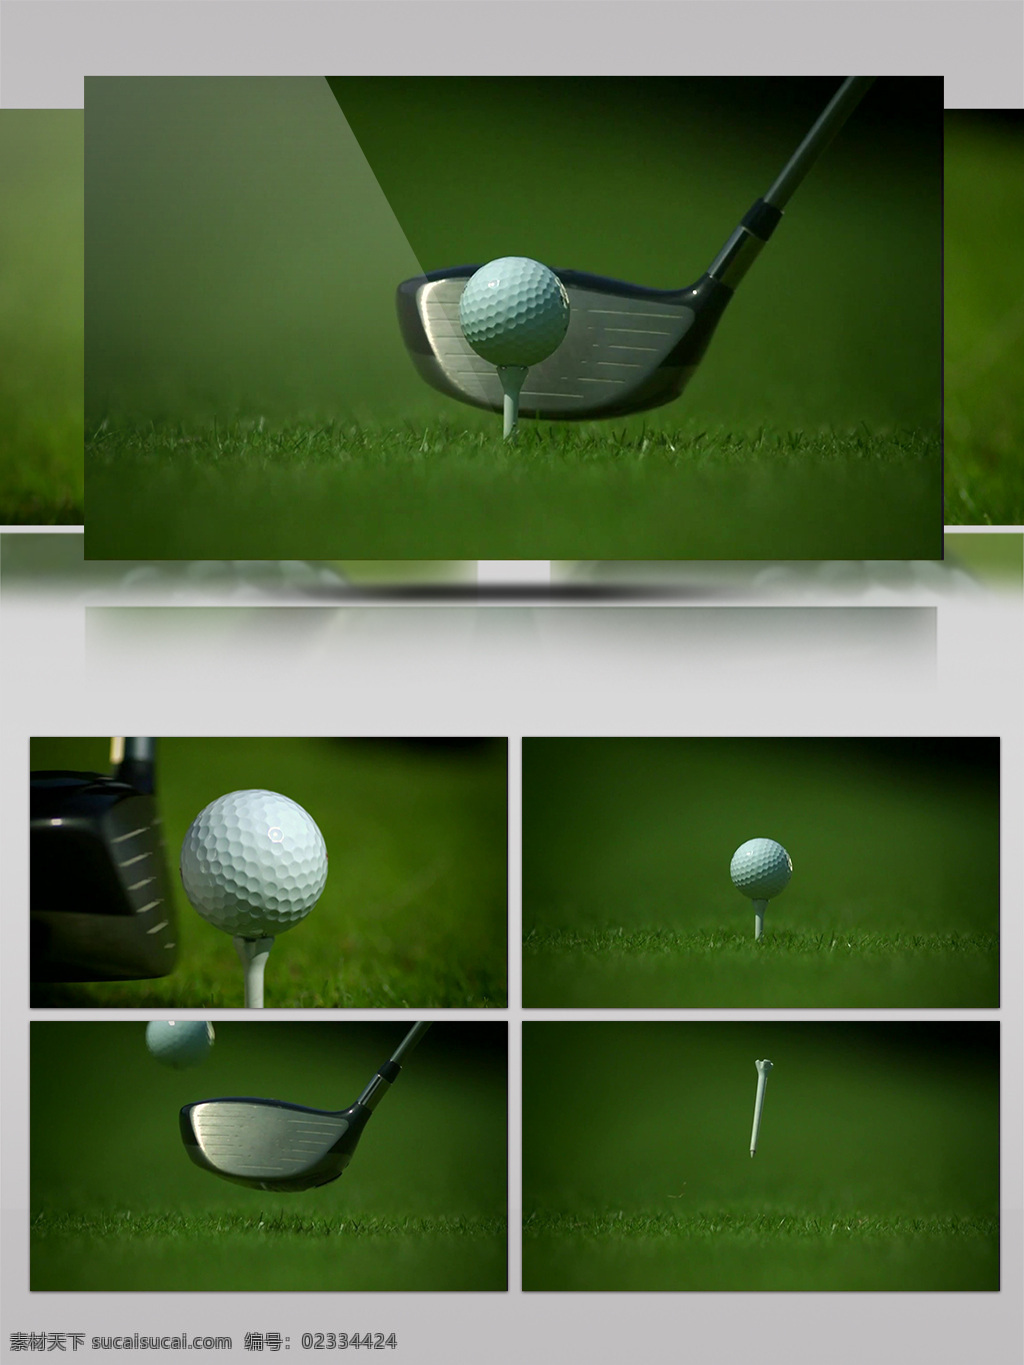 特写 镜头 高尔夫球 慢 帧 延时 球杆 球托慢帧